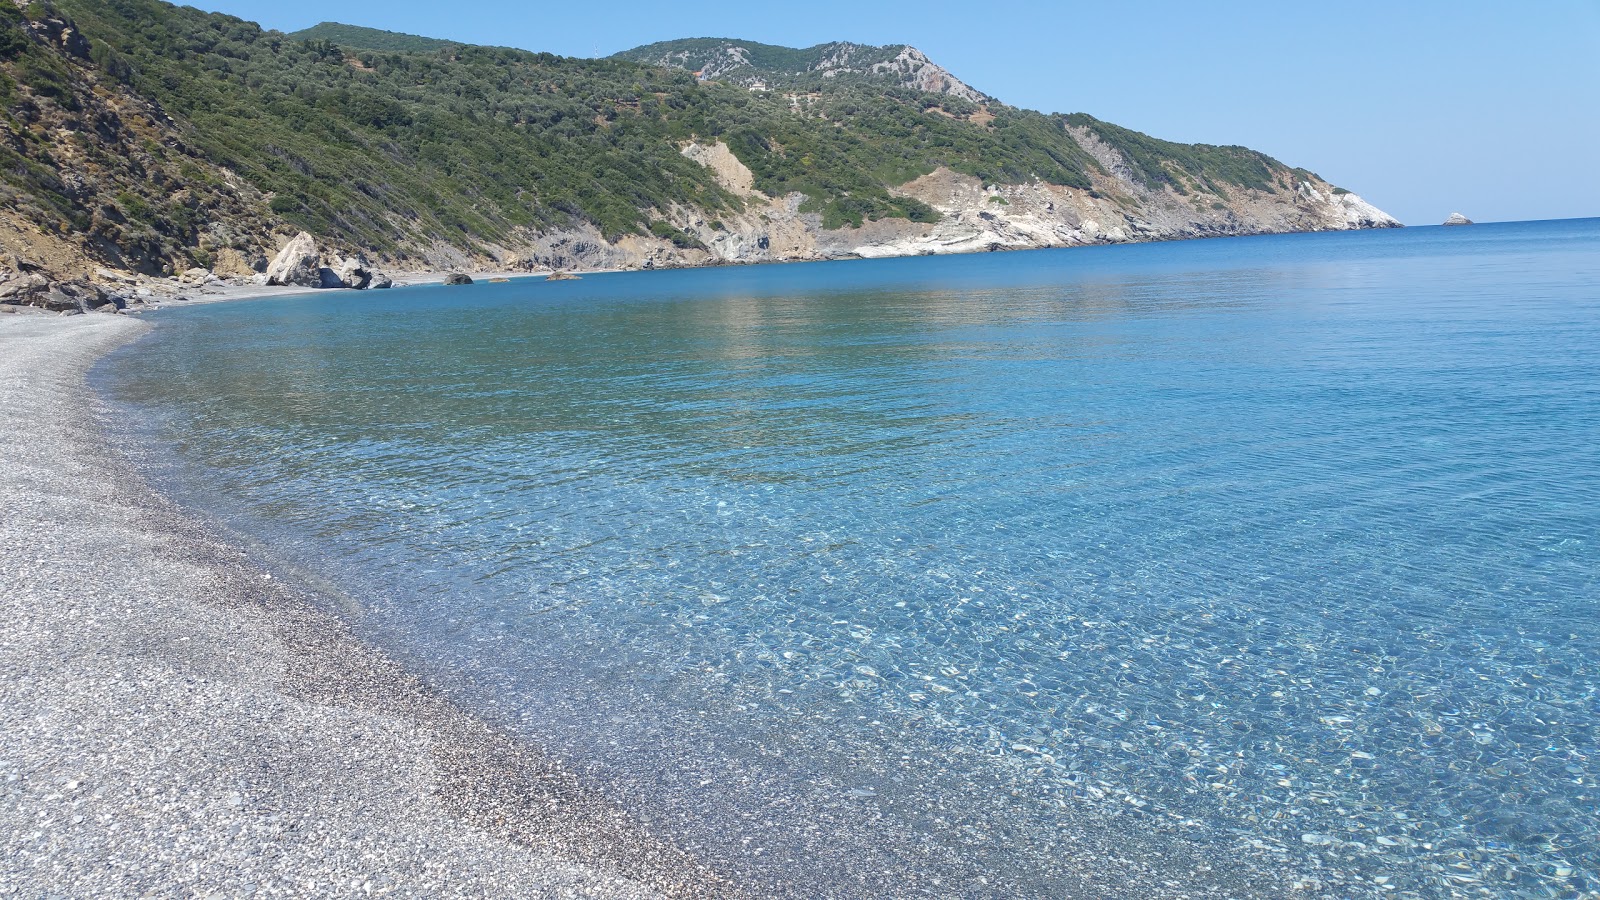 Zdjęcie Megas Gialos beach położony w naturalnym obszarze